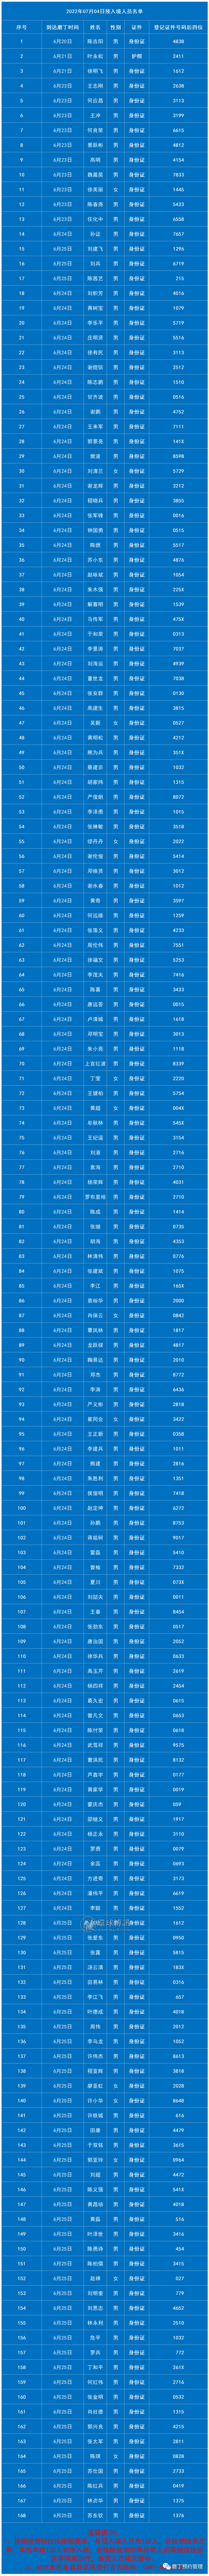 7月4日老挝磨丁预入境中国人员名单